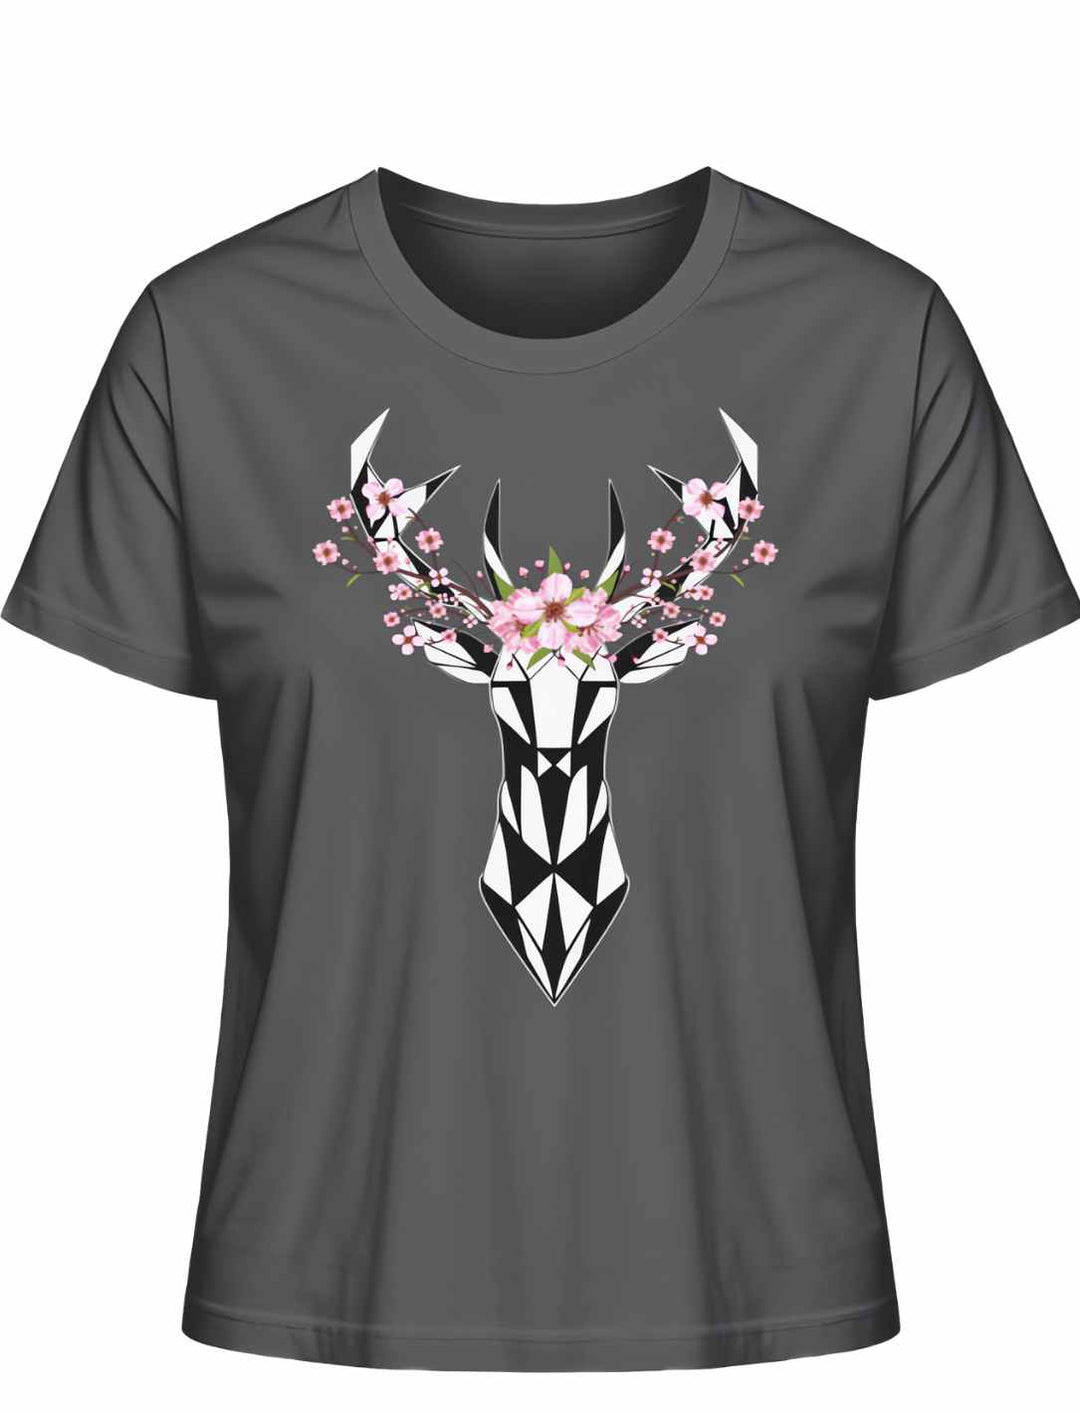 "Sakura Deer" Damen-T-Shirt in Anthrazit, flach ausgebreitet, mit einem kontrastreichen Sakura- und Hirschdruck, der die Verbindung zur japanischen Natur symbolisiert.